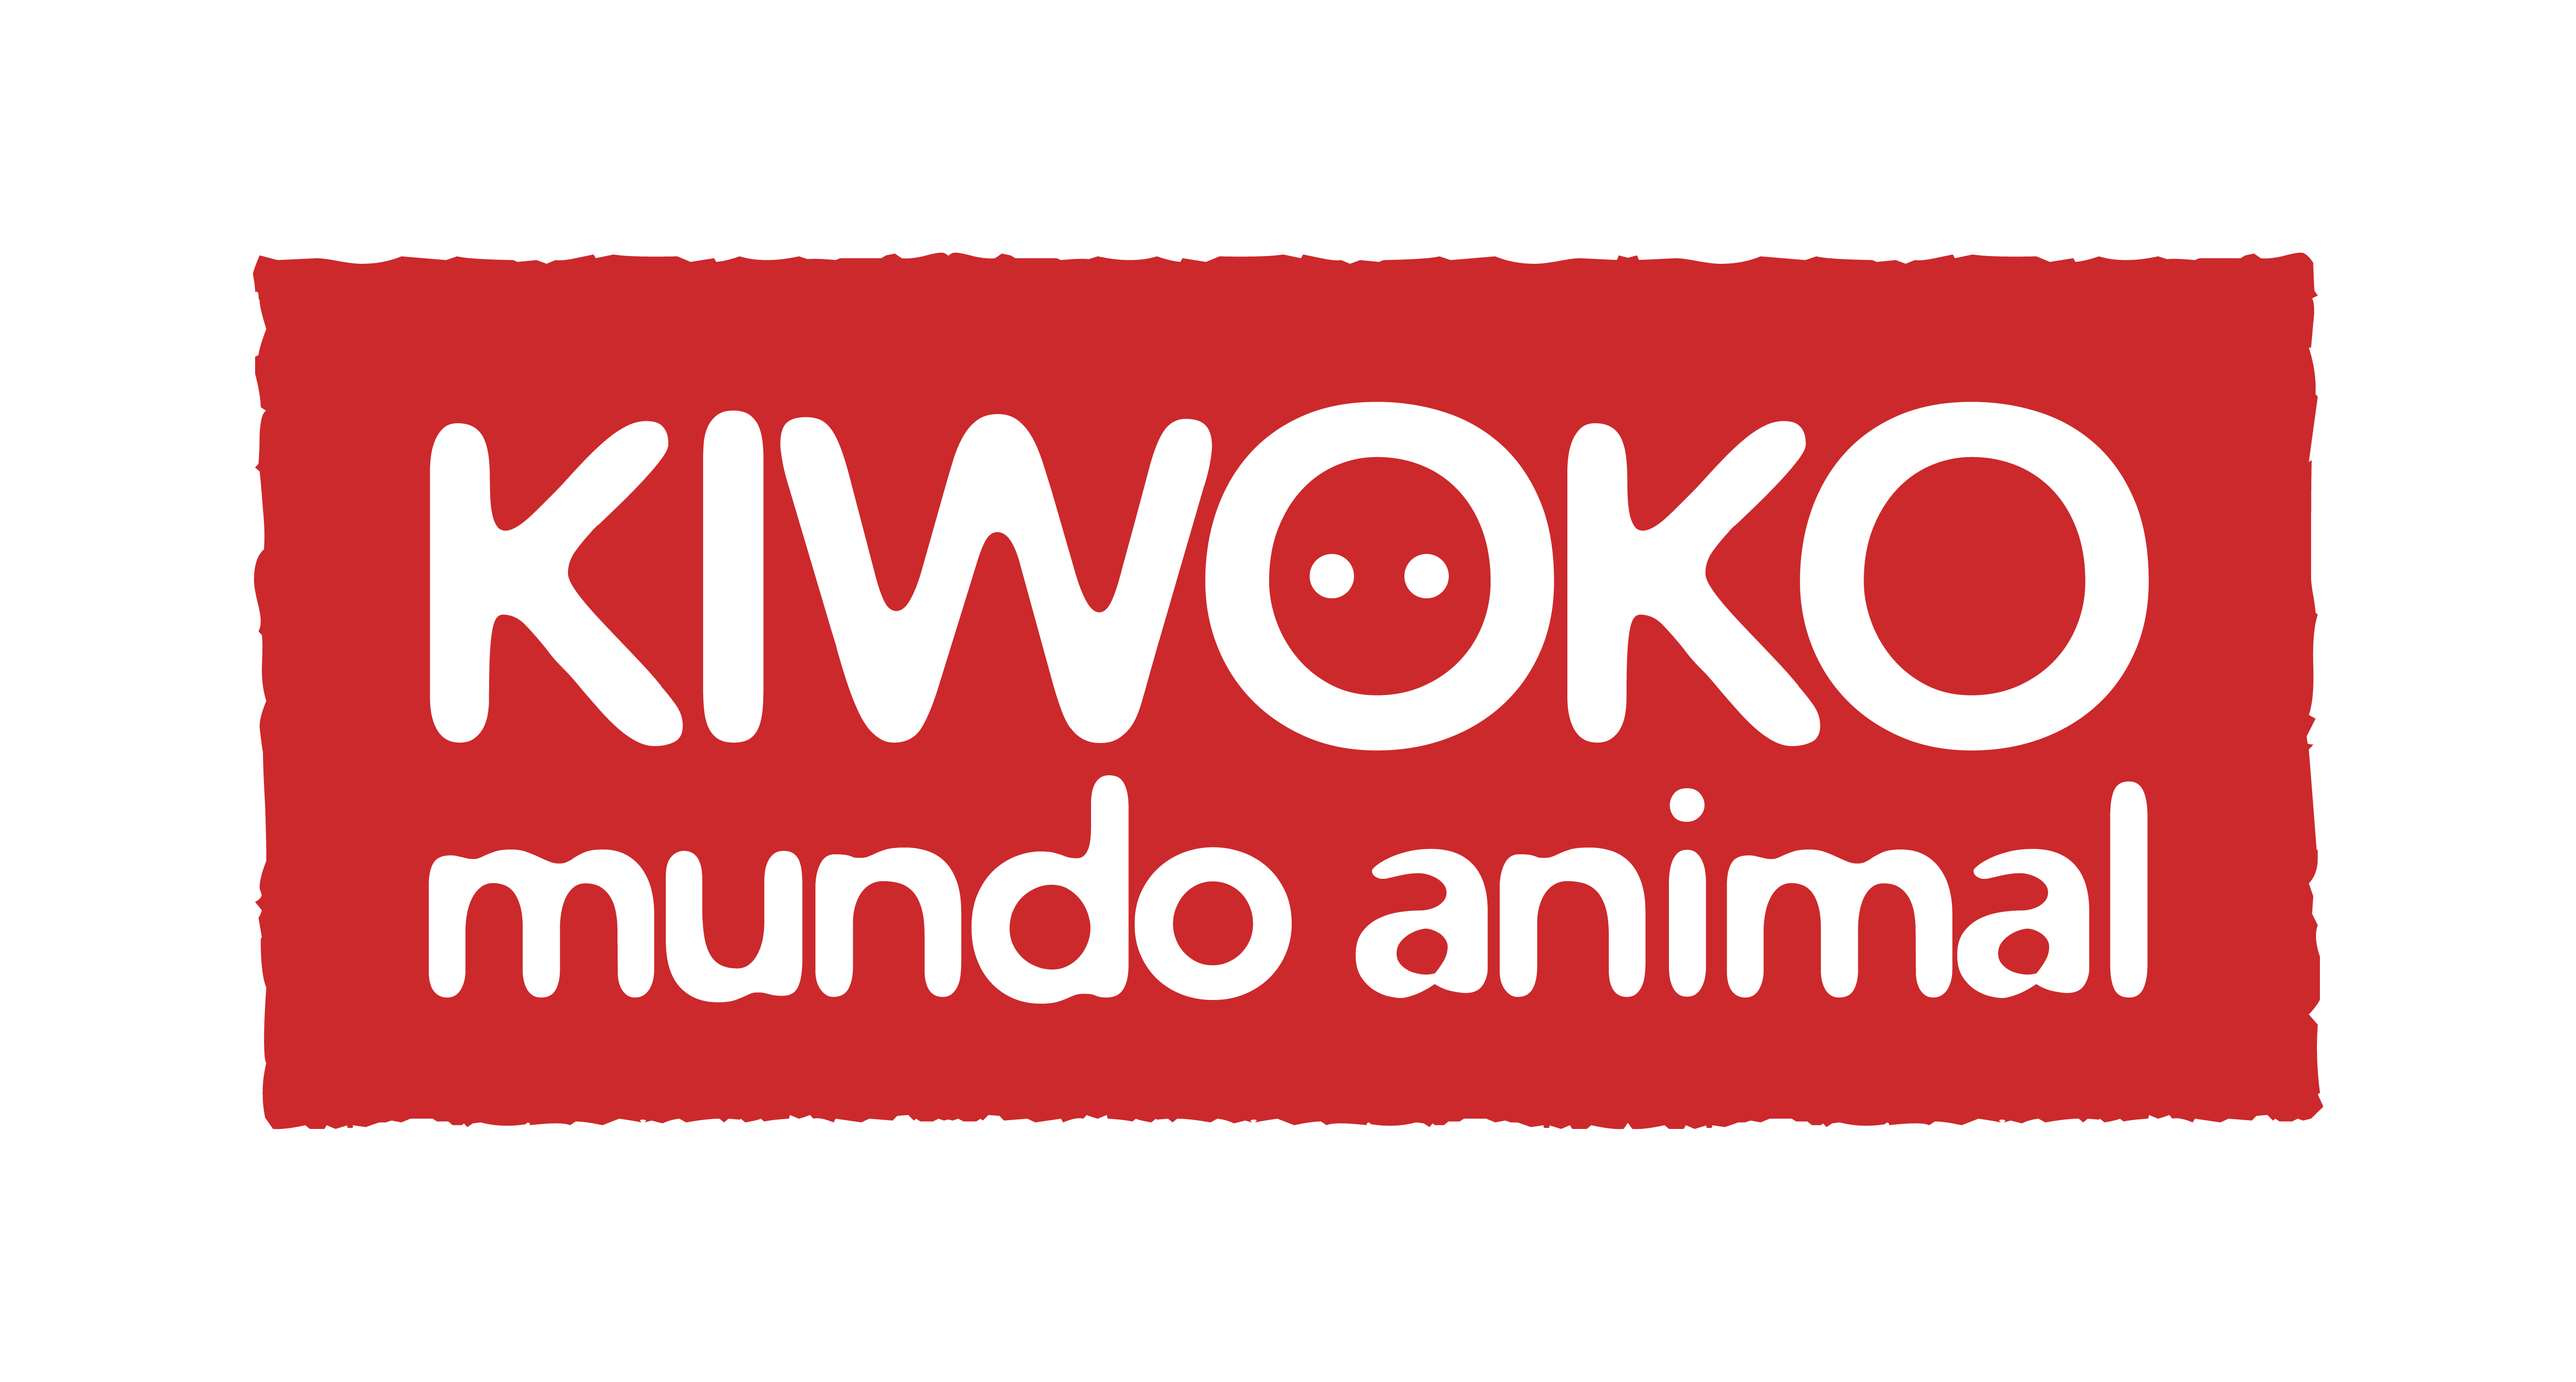 kiwoko mundo animal